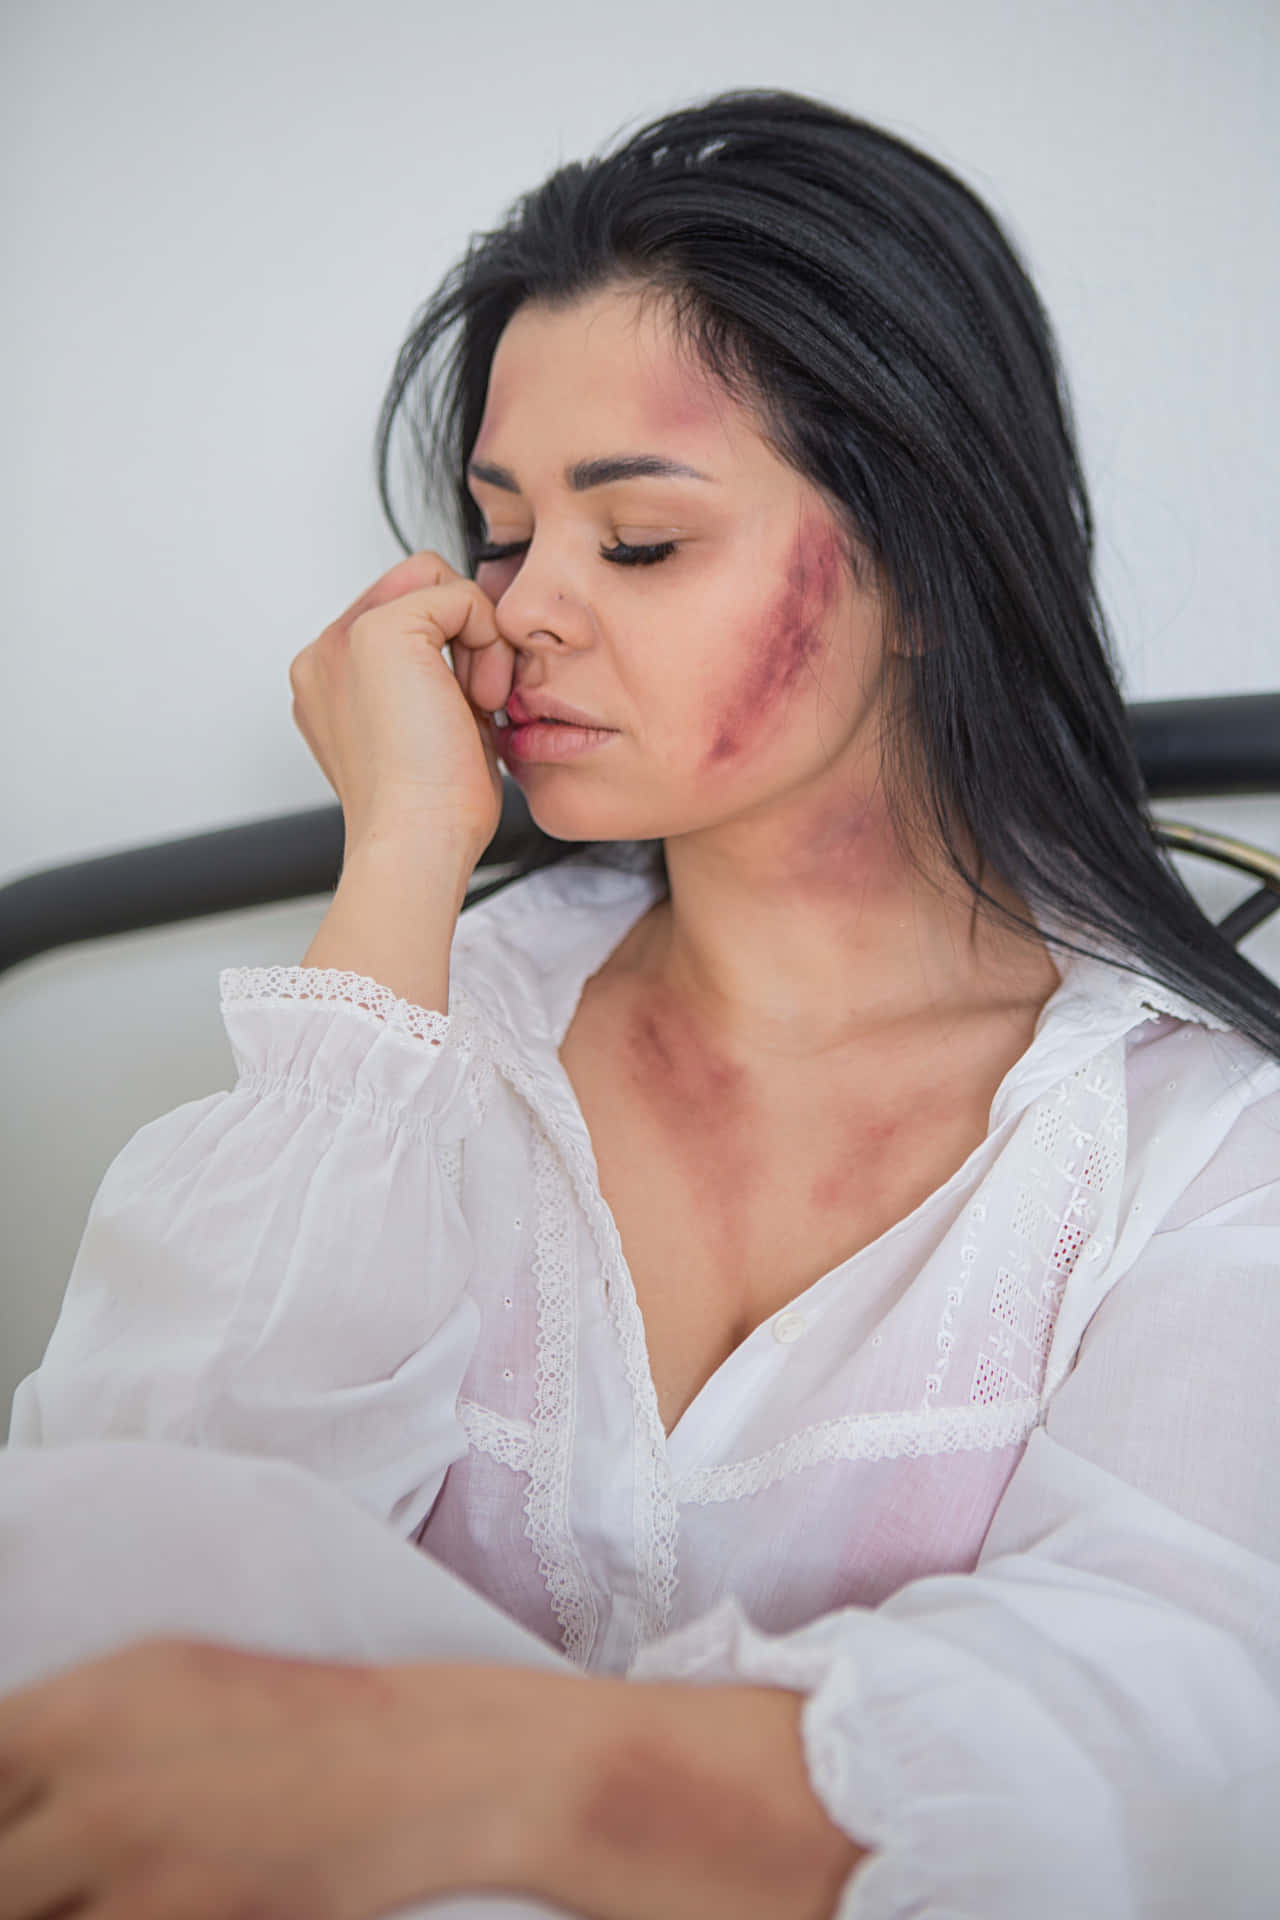 Bruised Girl In White Polo Wallpaper